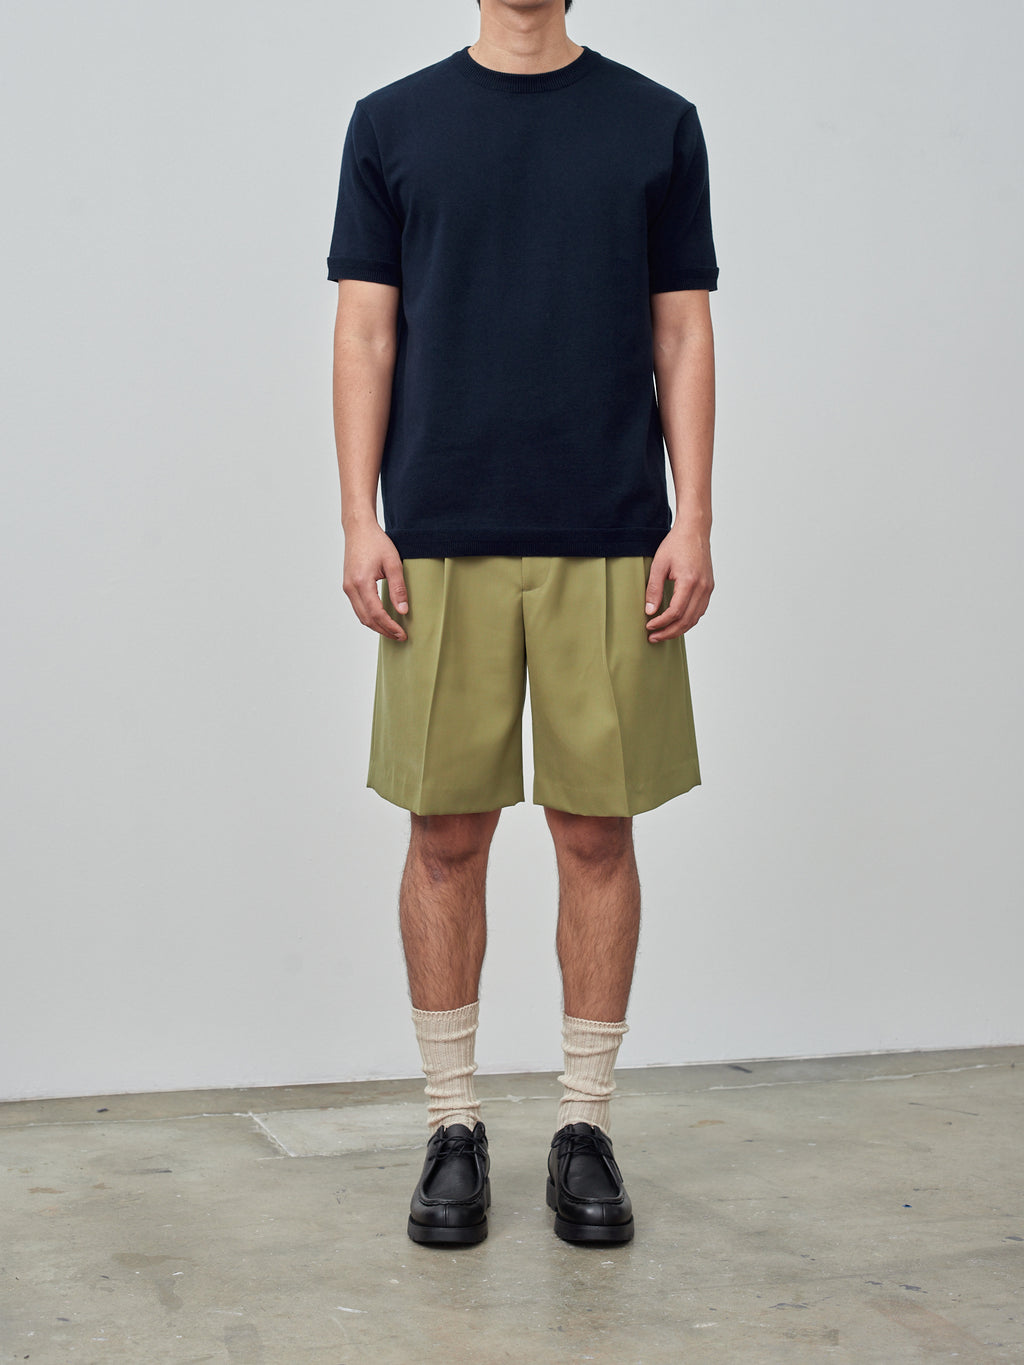 Namu Shop - Fujito C/N Knit T-Shirt - Dark Navy